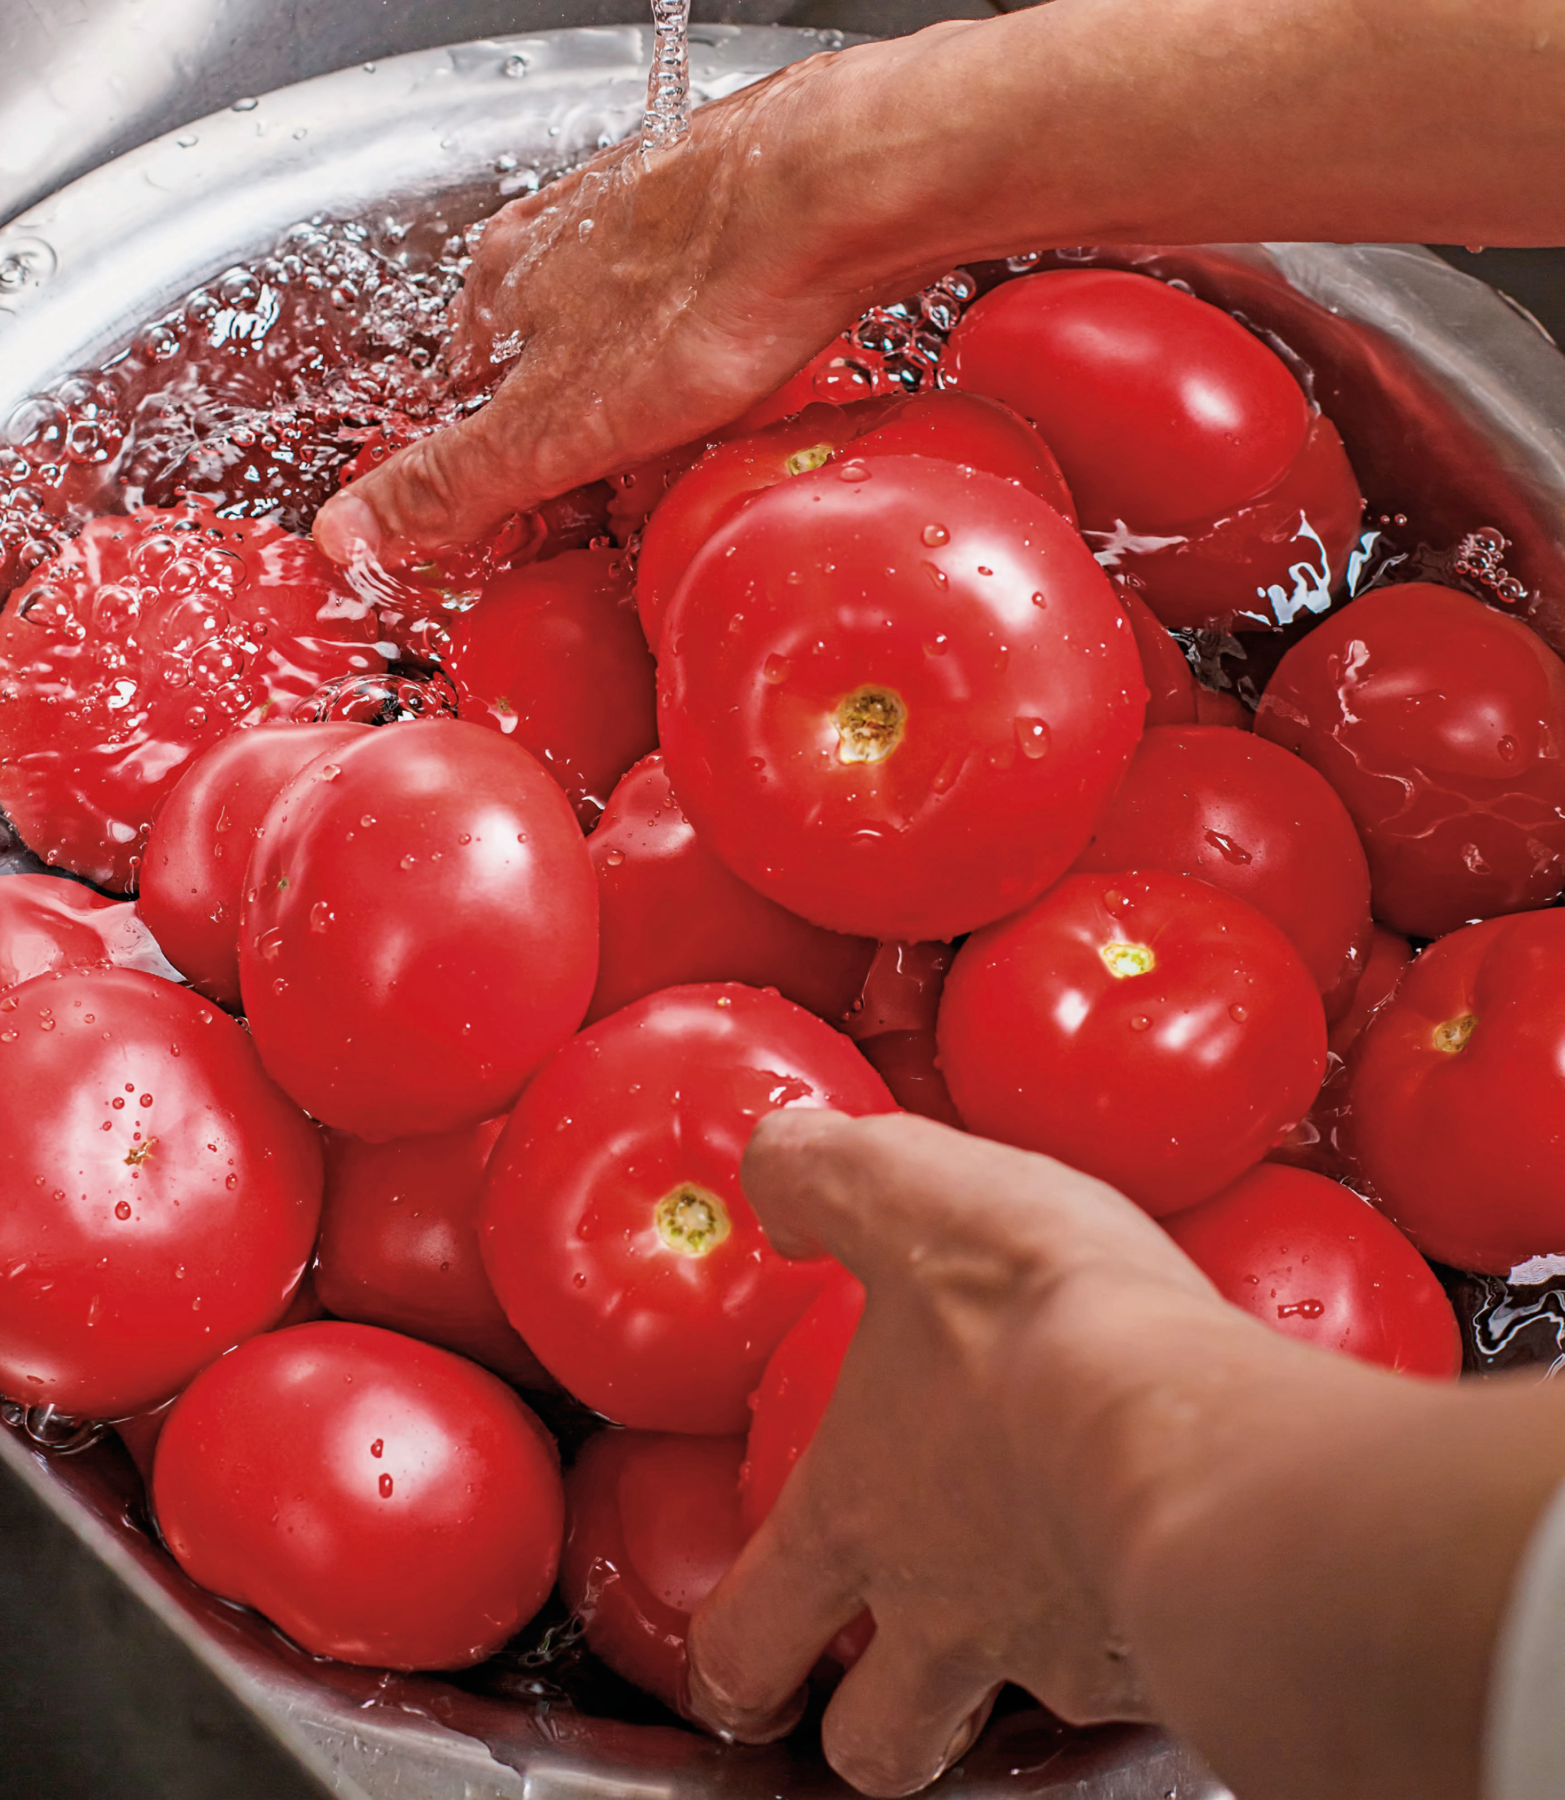 Fotografia. Pessoa com as mãos em uma bacia metálica com água, lavando muitos tomates, vermelhos e de formato arredondado.